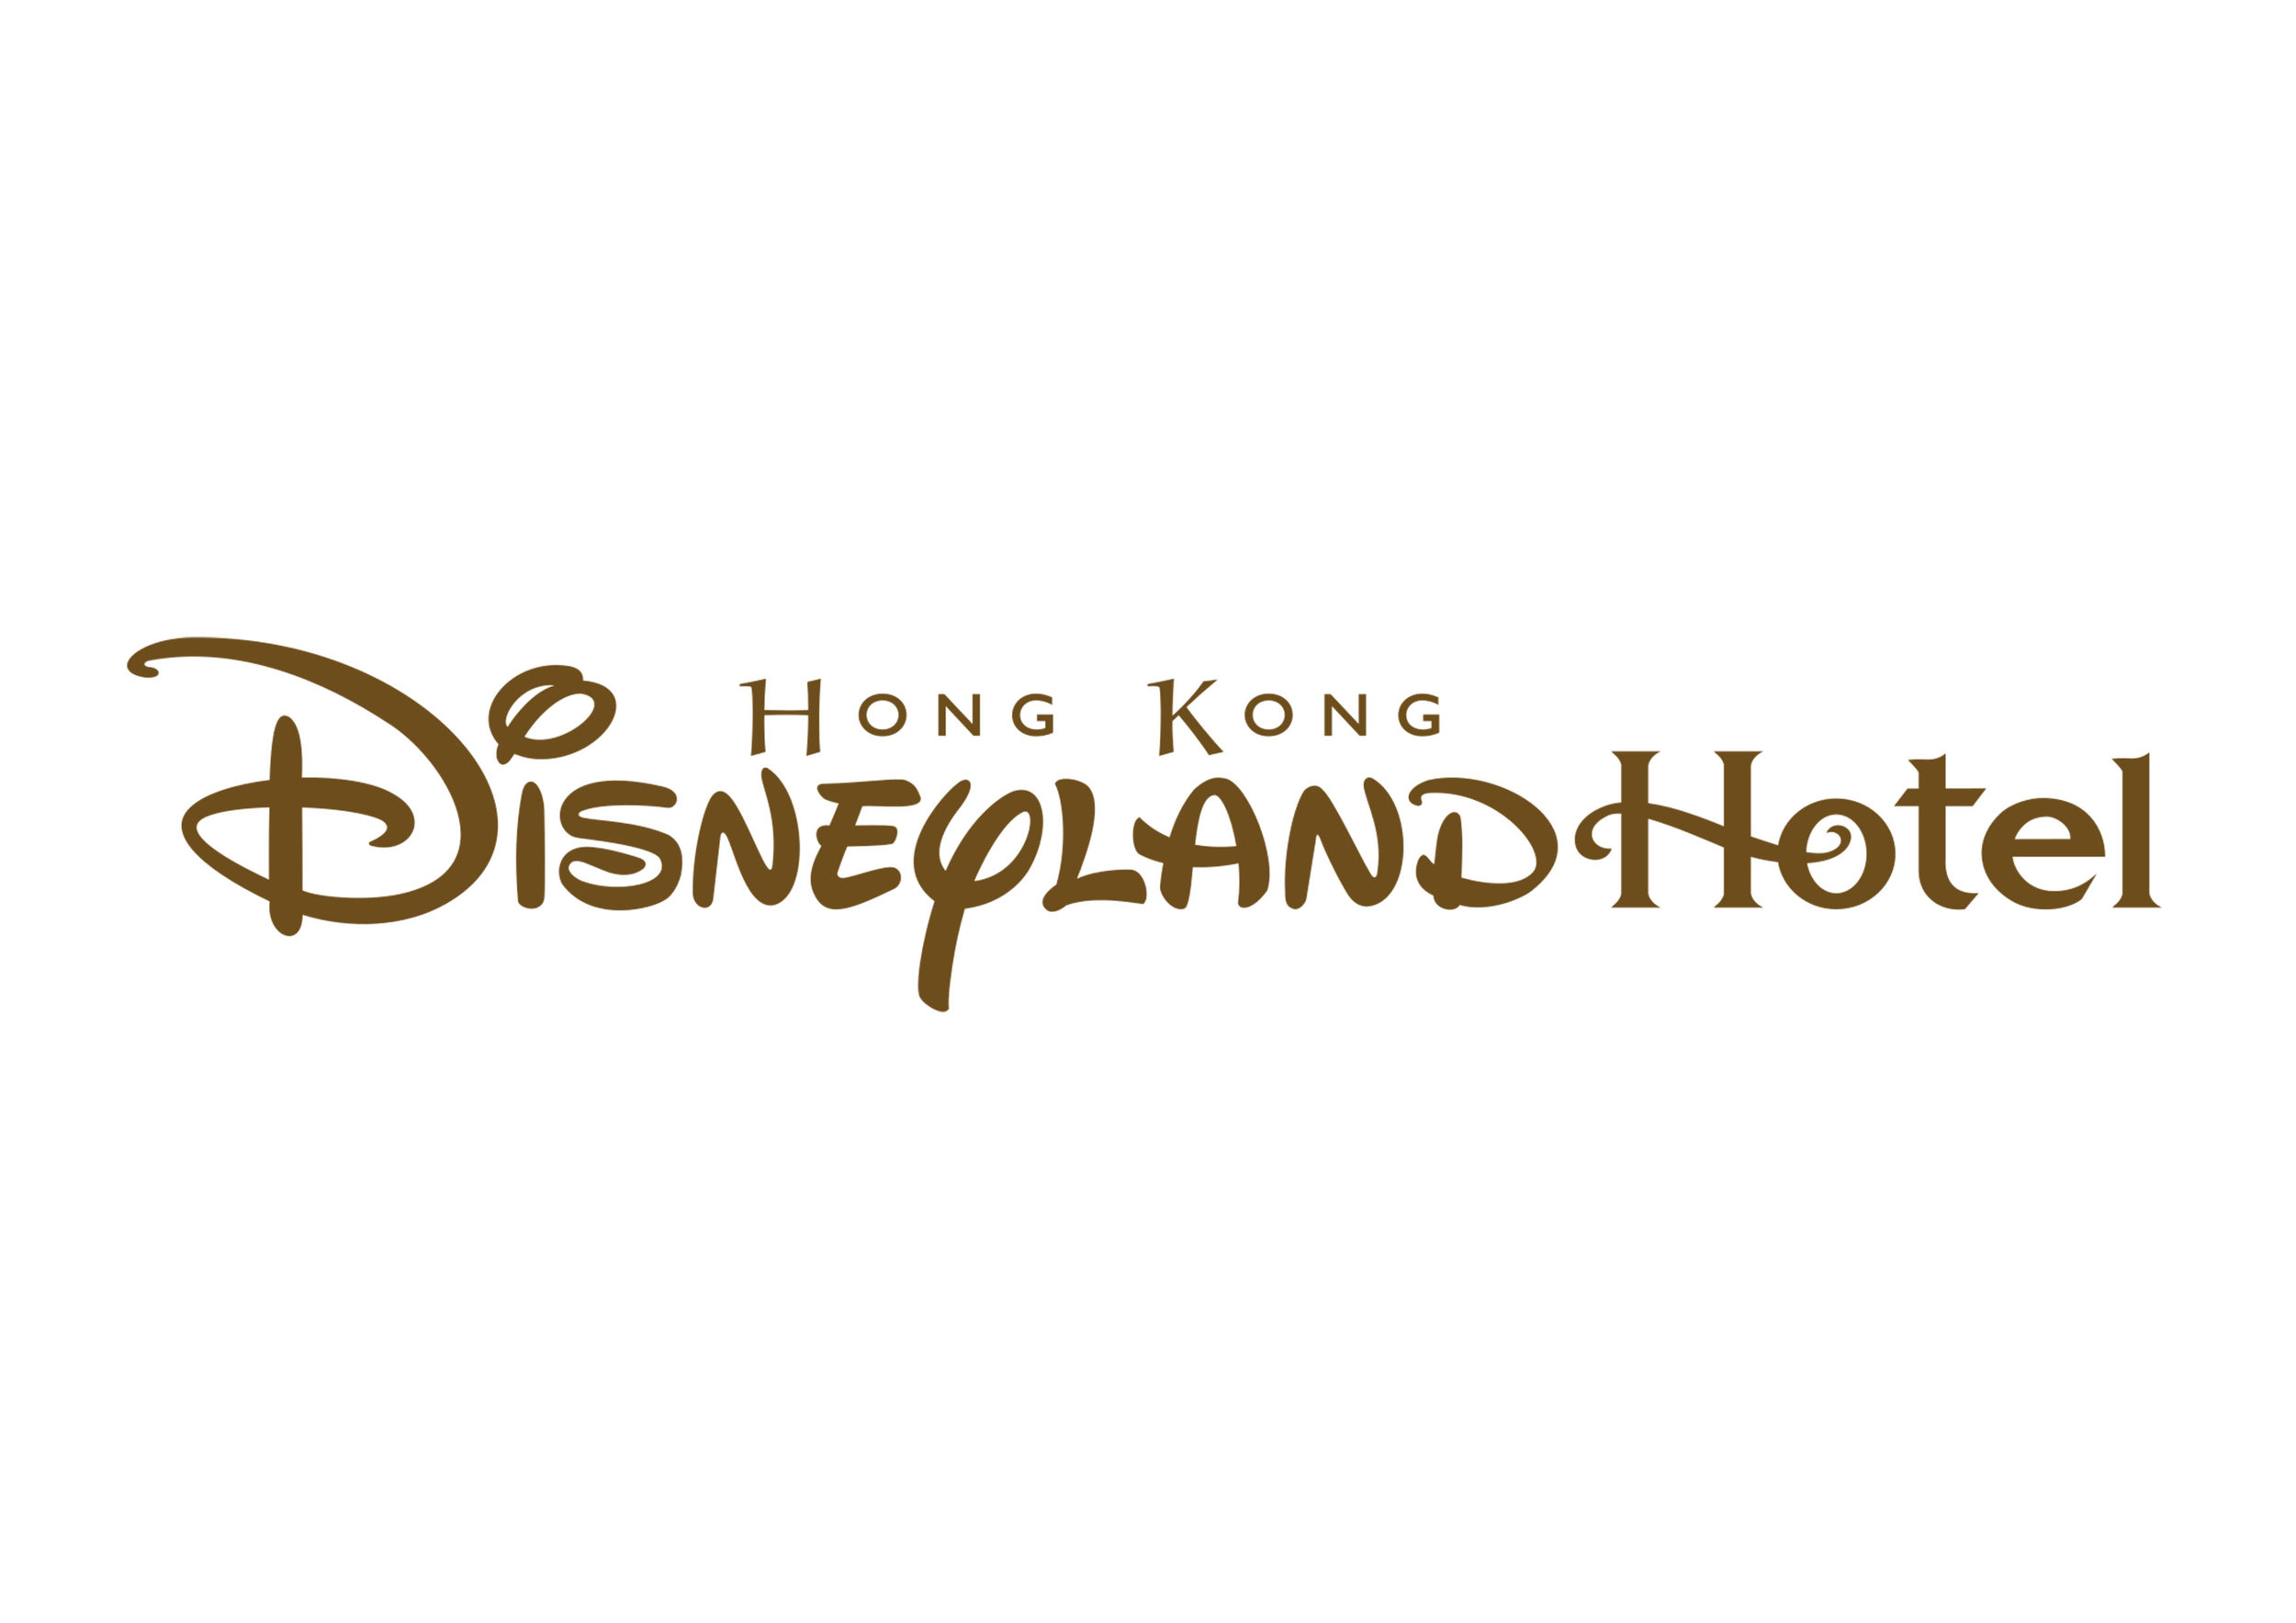  ..  Hong Kong Disneyland Hotel 